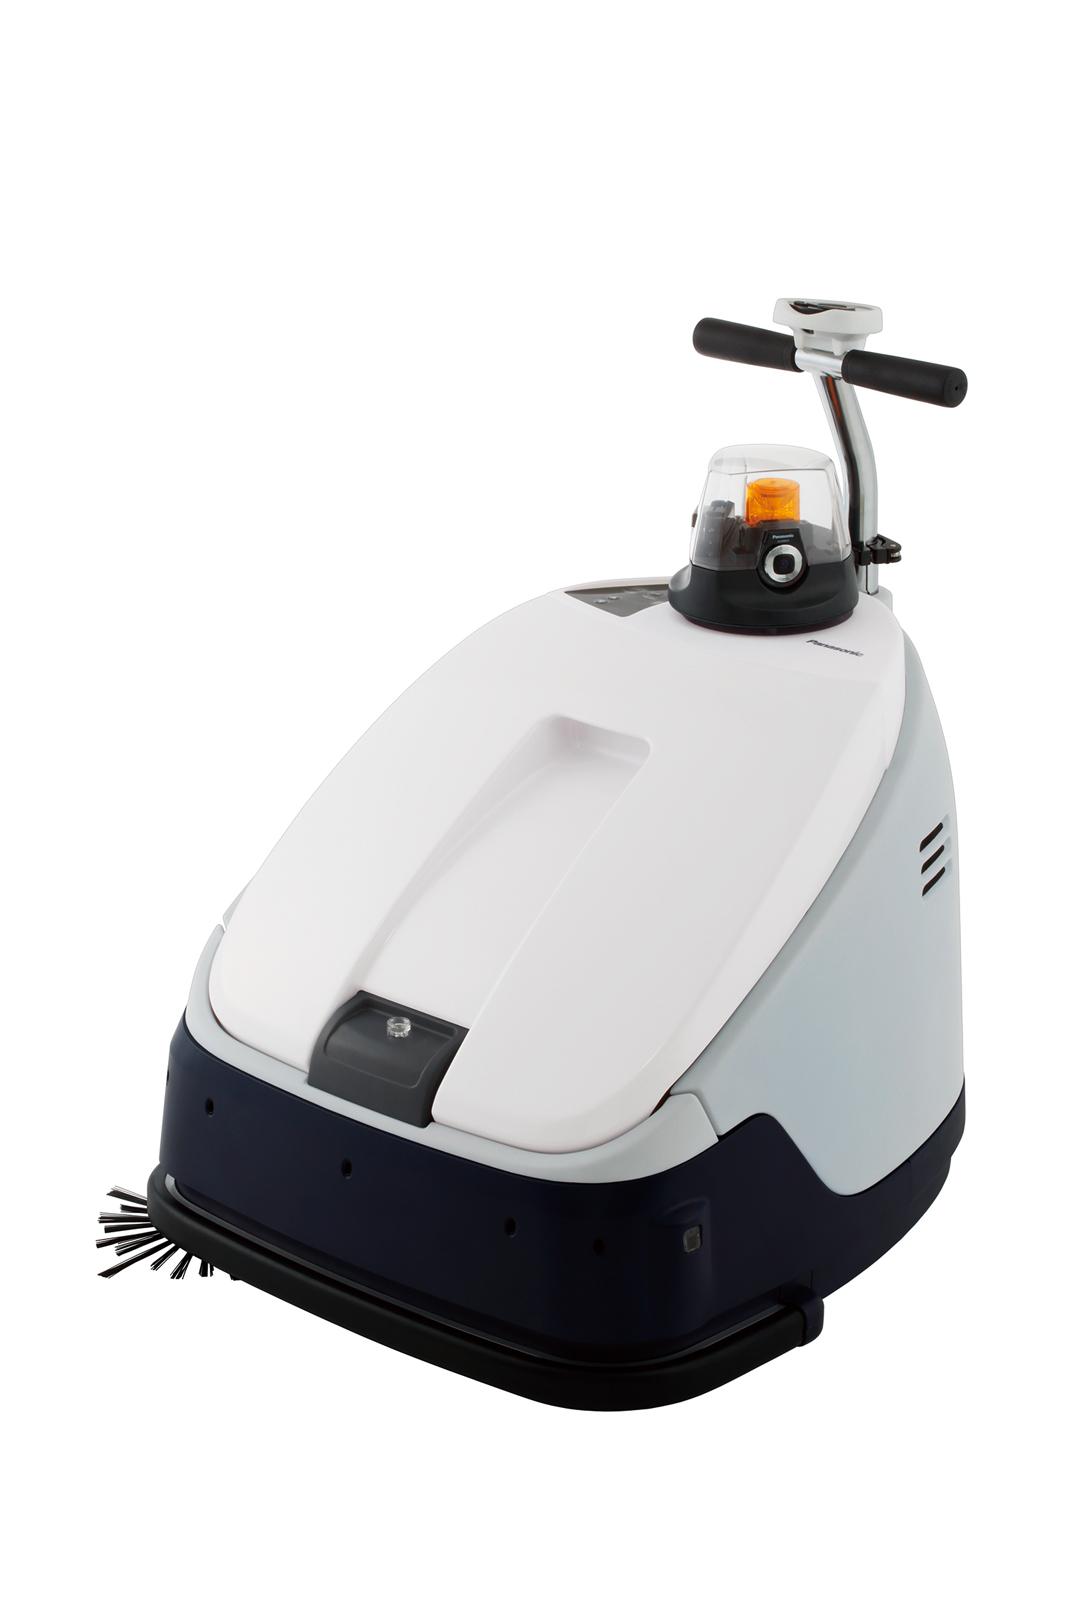 生活家電 掃除機 業務用ロボット掃除機「RULO Pro」を発売 | 企業・法人向け 